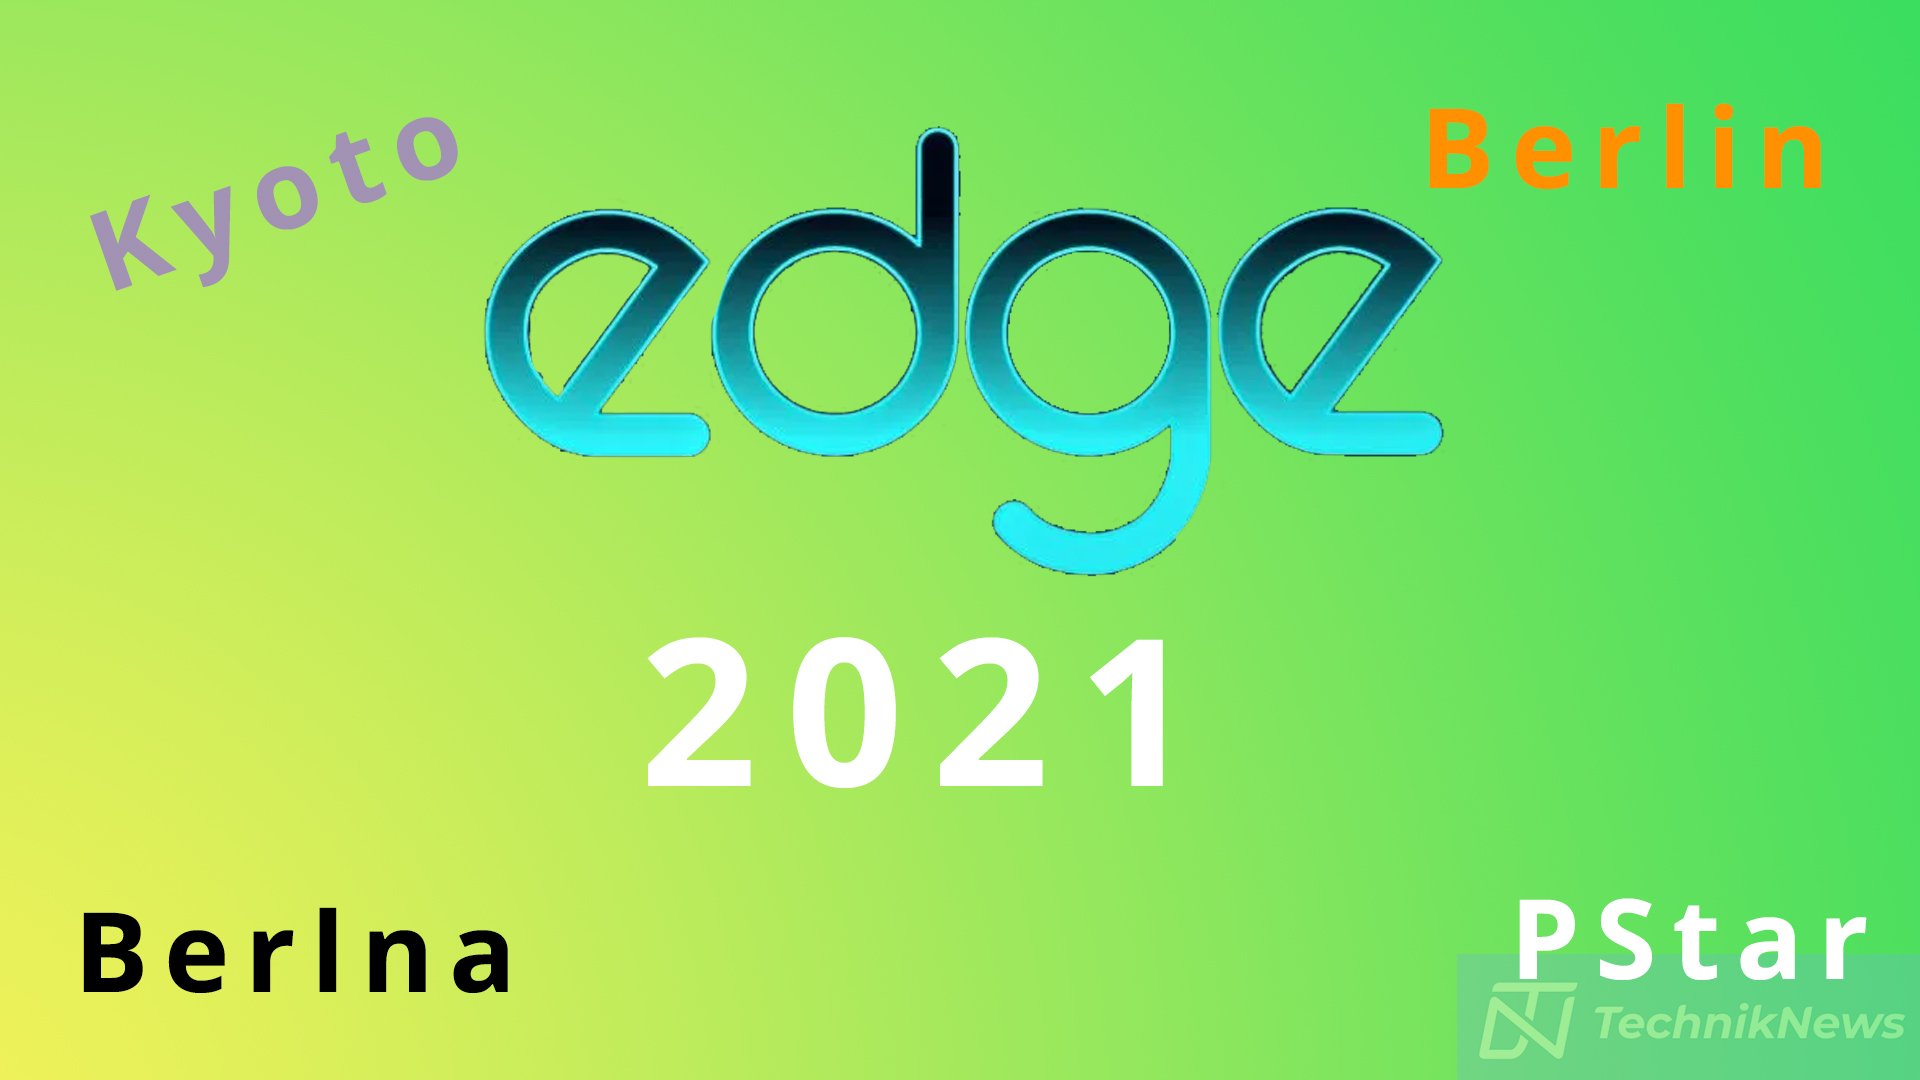 Motorola Edge 2021 Titelbild